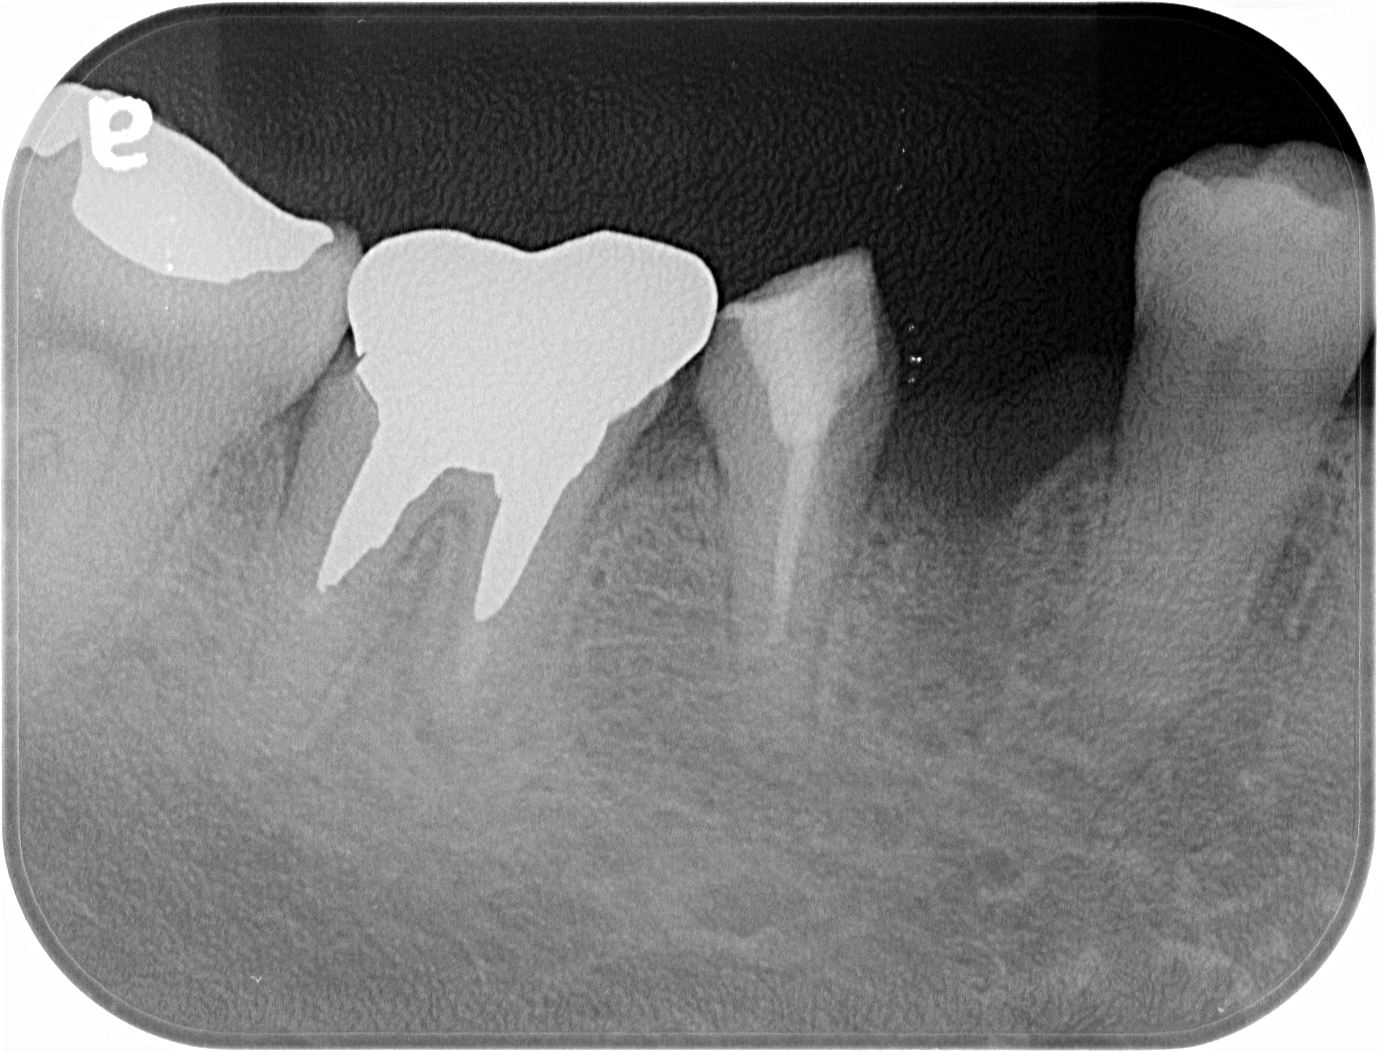 下の奥歯が破折し抜歯になった部位にインプラント治療を行なった症例